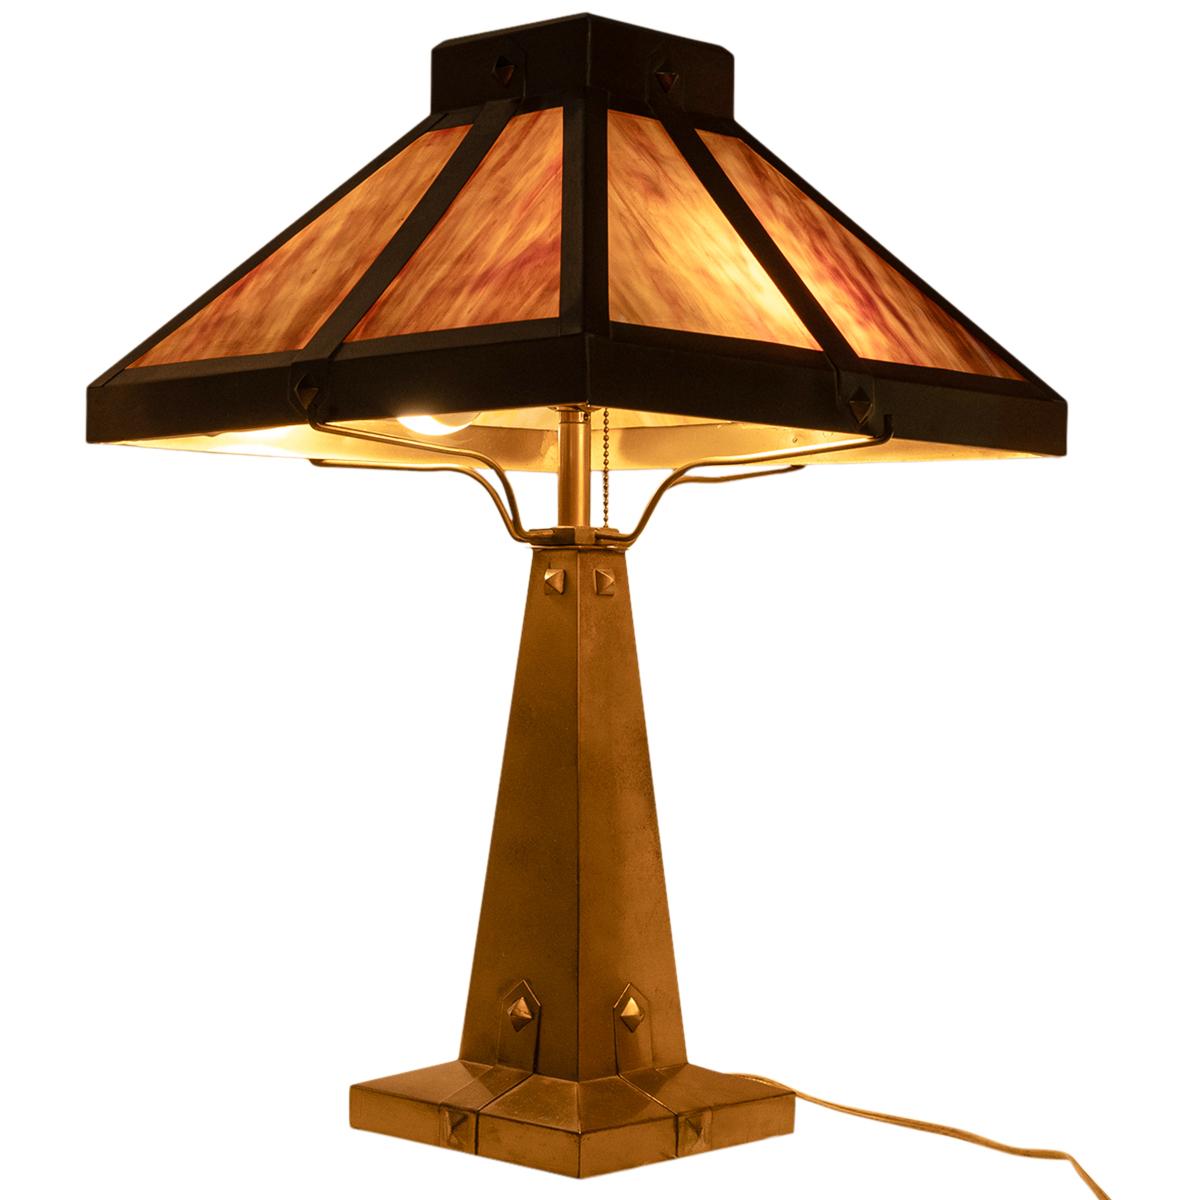 AS sehr gute antike amerikanische Arts & Crafts, Mission, Messing & Schlacke Glas Tischlampe, um 1910.
Diese sehr hübsche, zweiflammige Missionslampe hat einen karamellfarbenen und cremefarbenen vierteiligen Schlackenglasschirm aus Messing, der auf